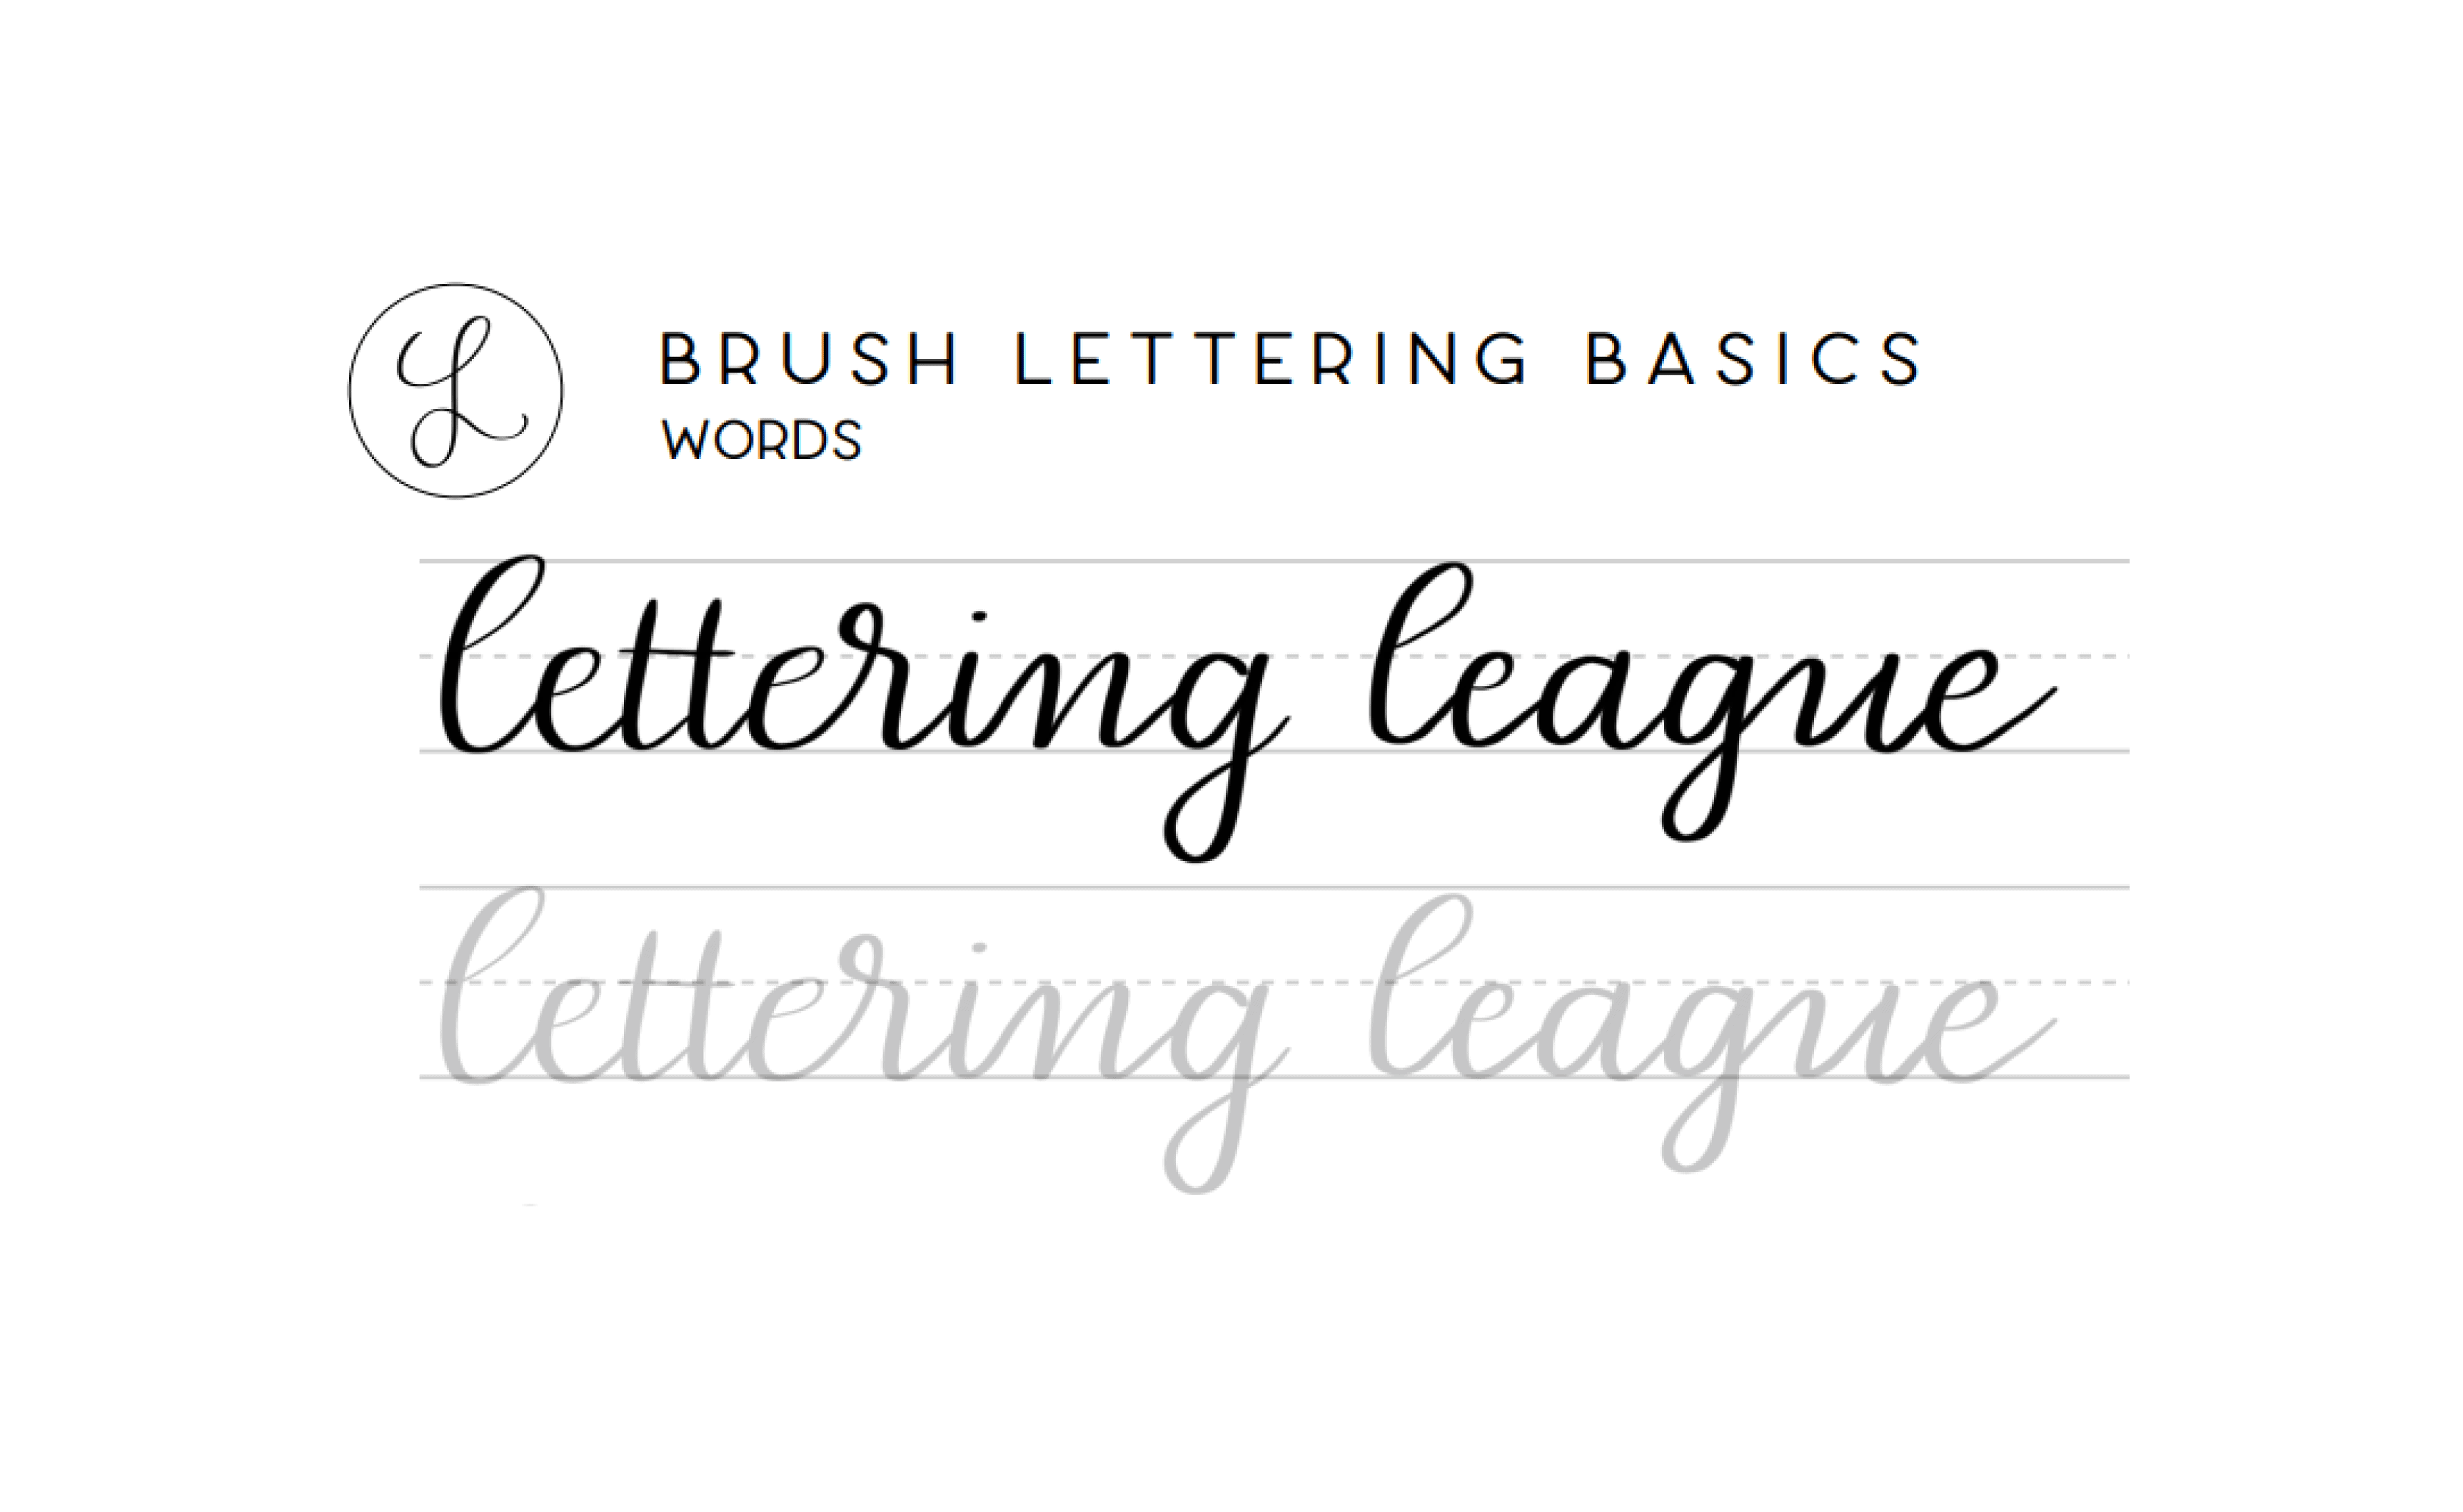 Brush Pen Lettering & Calligraphy Complete Beginner's Guide